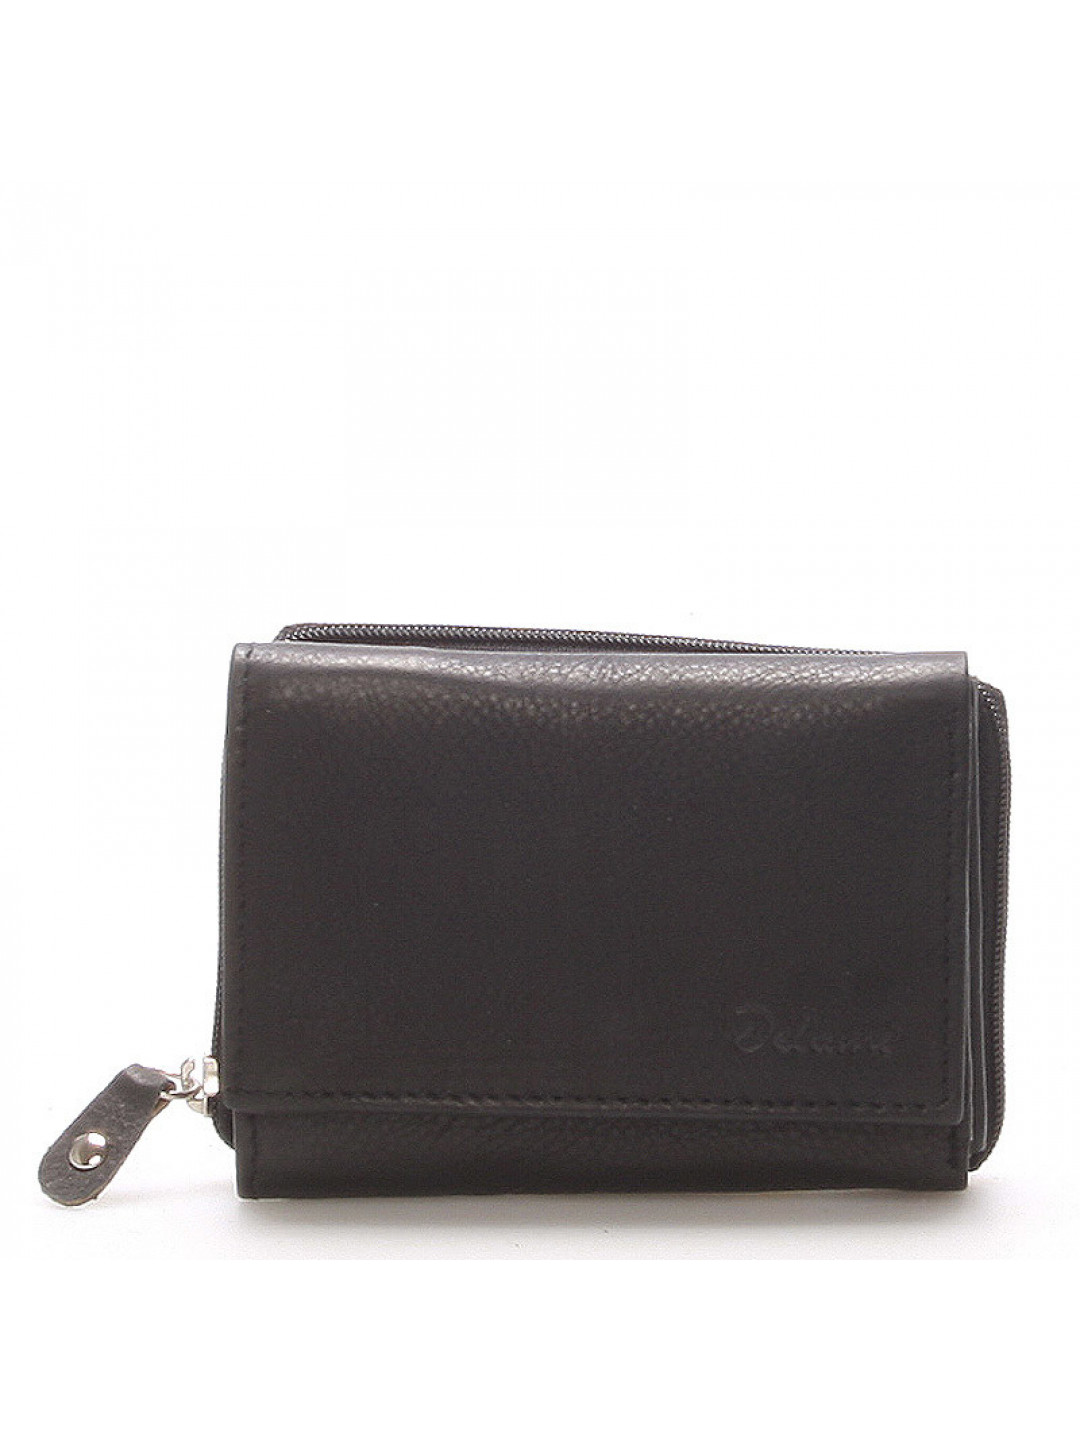 Kožená peněženka Delami Roxy černá